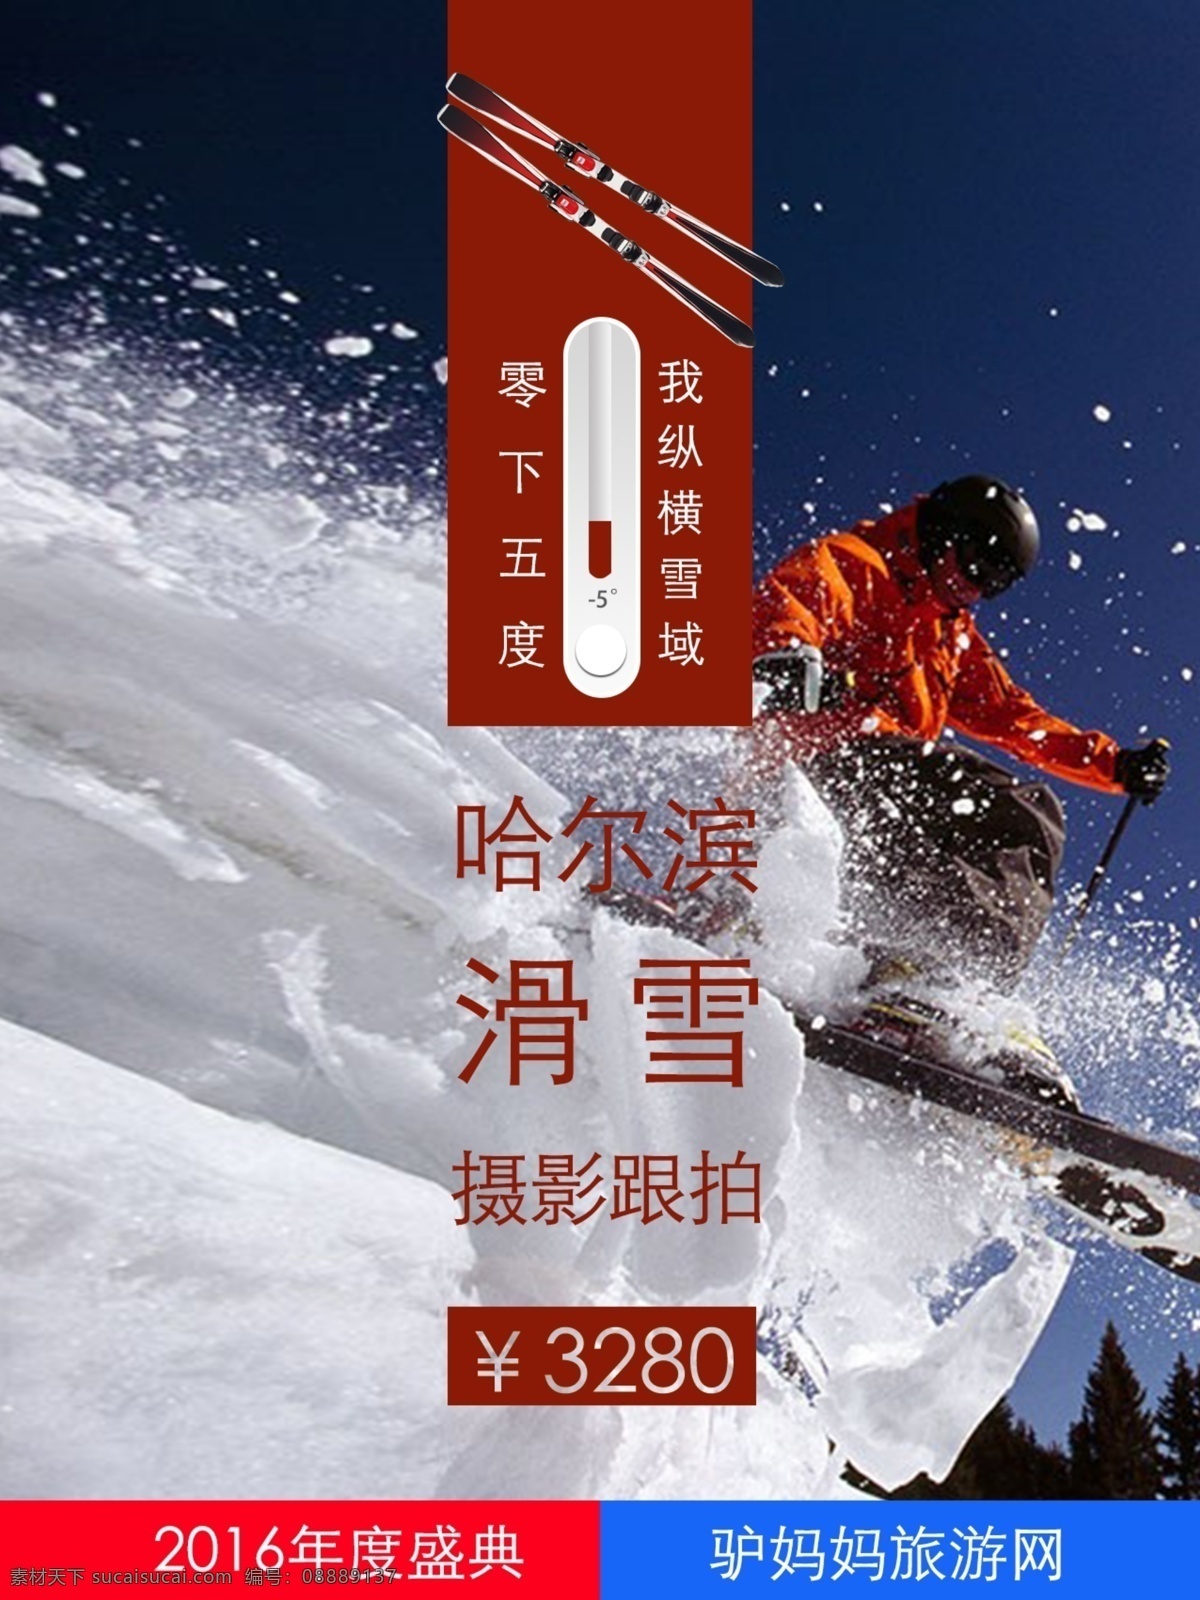 哈尔滨 旅游 滑雪 海报 雪景 旅行 模板 滑板